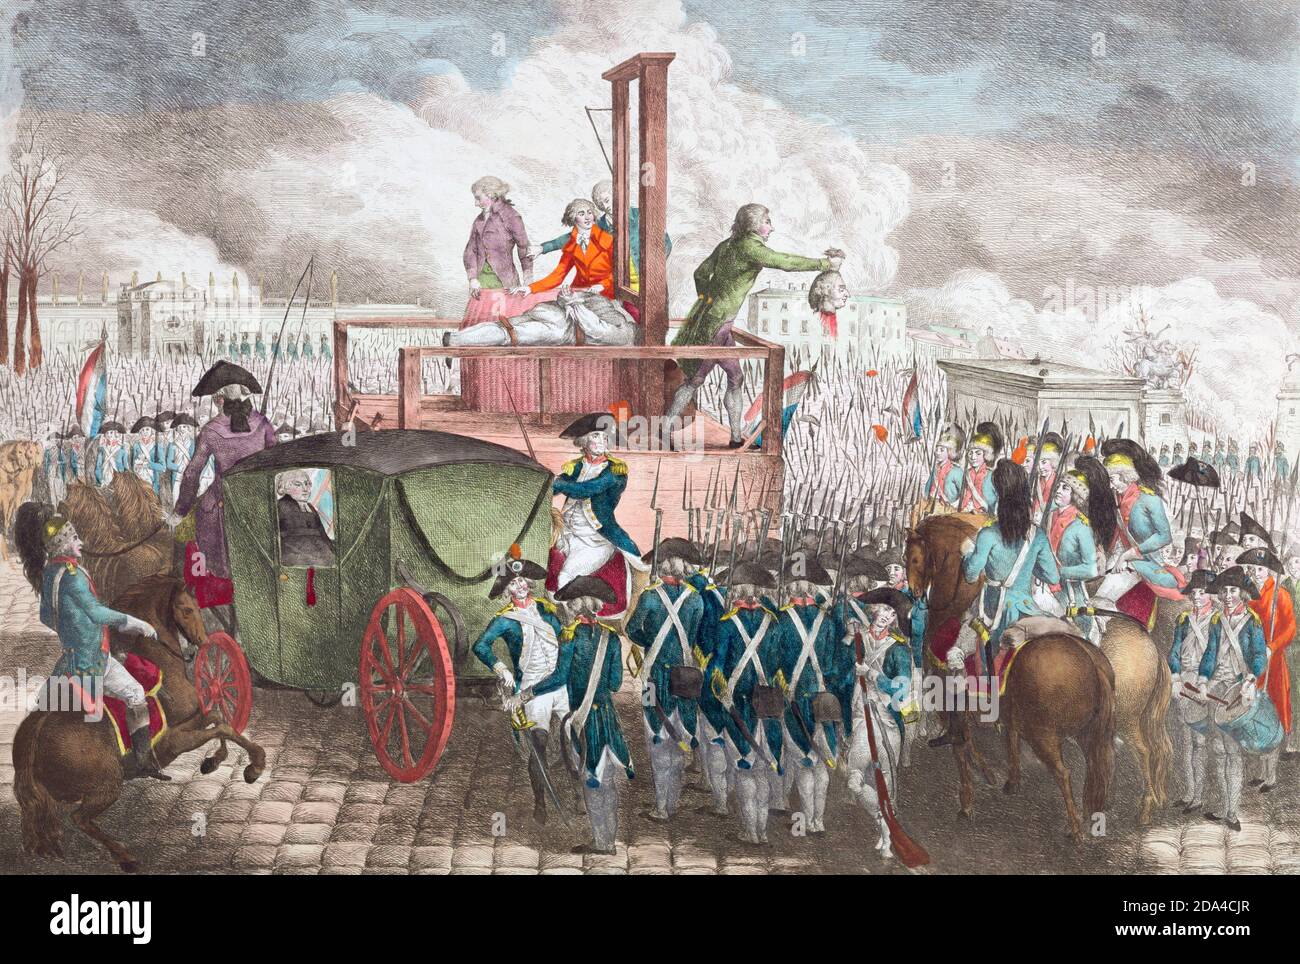 L’esecuzione da parte della ghigliottina in Place de la Concorde, Parigi, il 21 gennaio 1793, del re francese Luigi XVI durante la Rivoluzione francese. Dopo una stampa a colori a mano della metà del 1790. Foto Stock